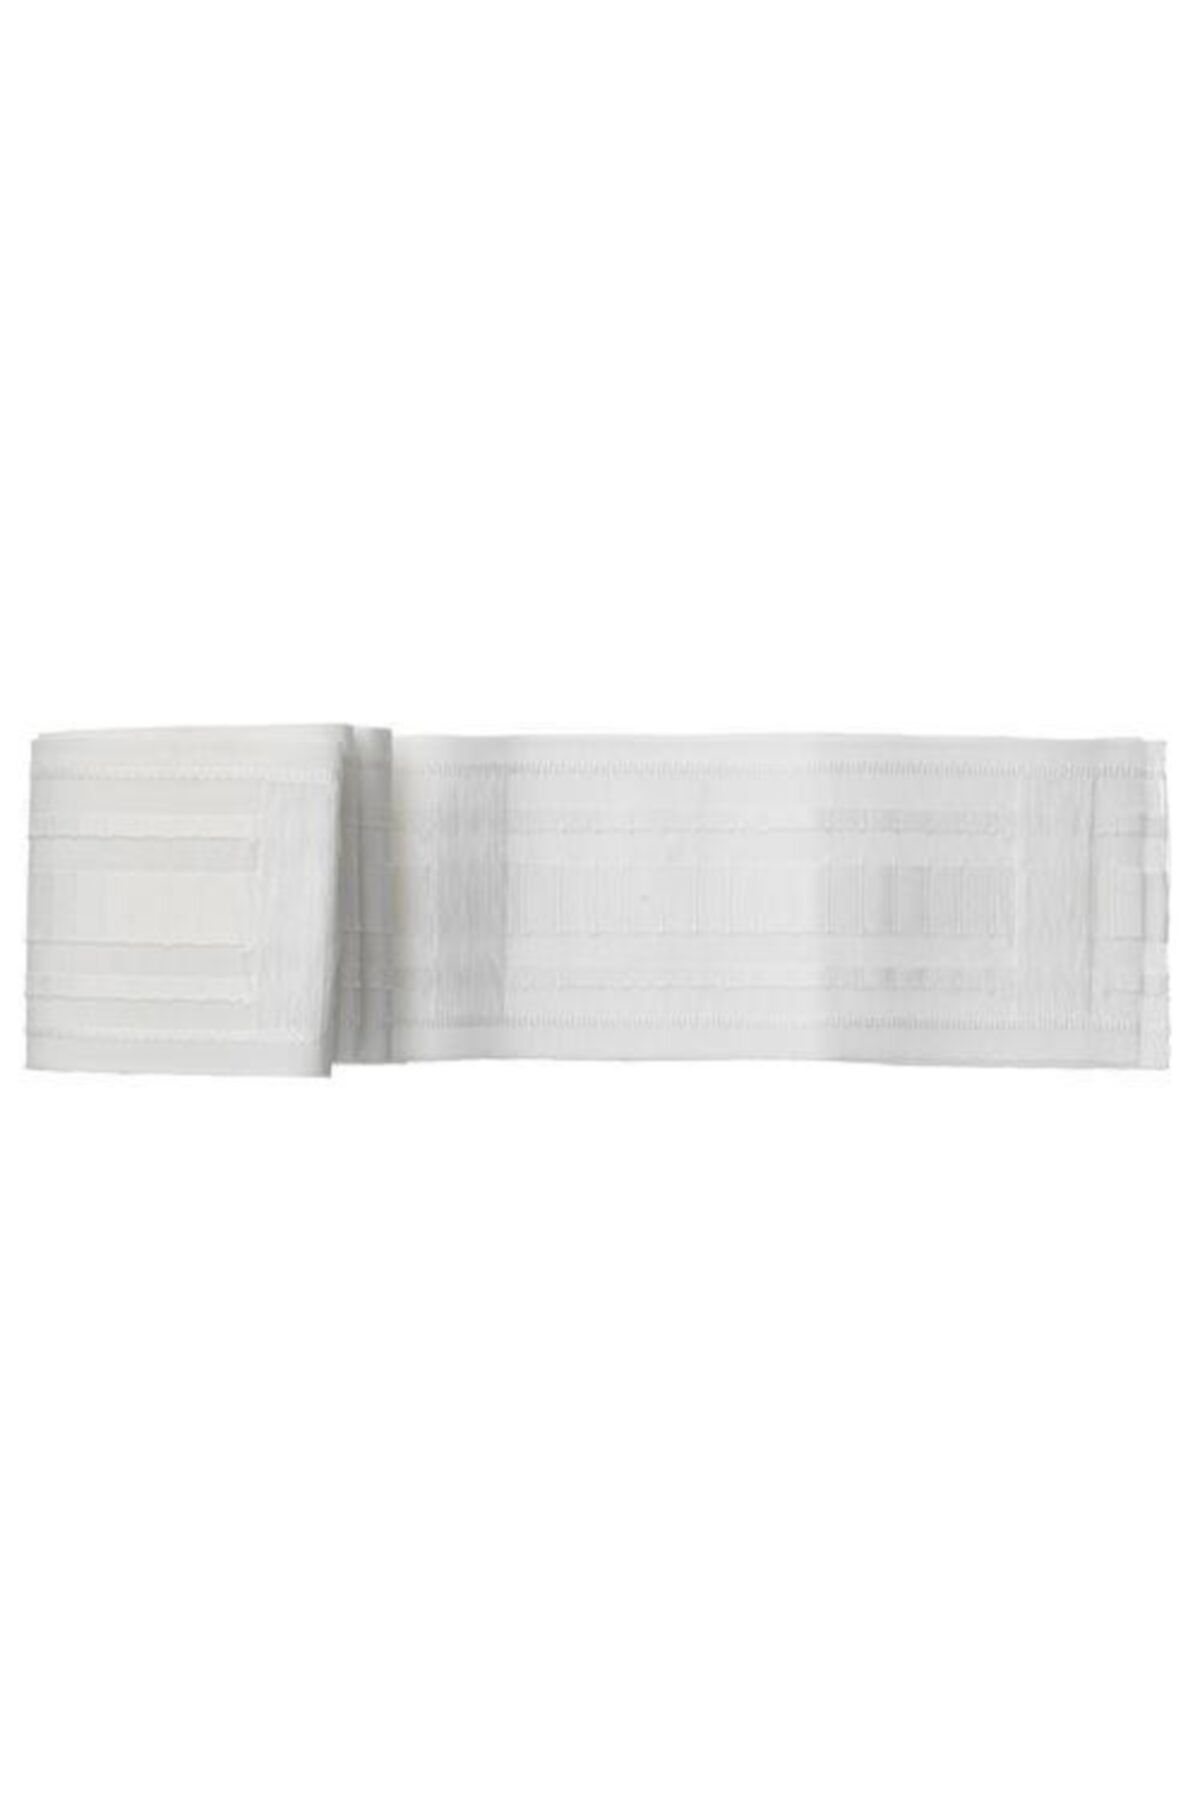 IKEA Perde Bandı Ekstrafor Bandı 8.5x310 Cm Toplama Bandı Beyaz Renk Bant %100 Polyester